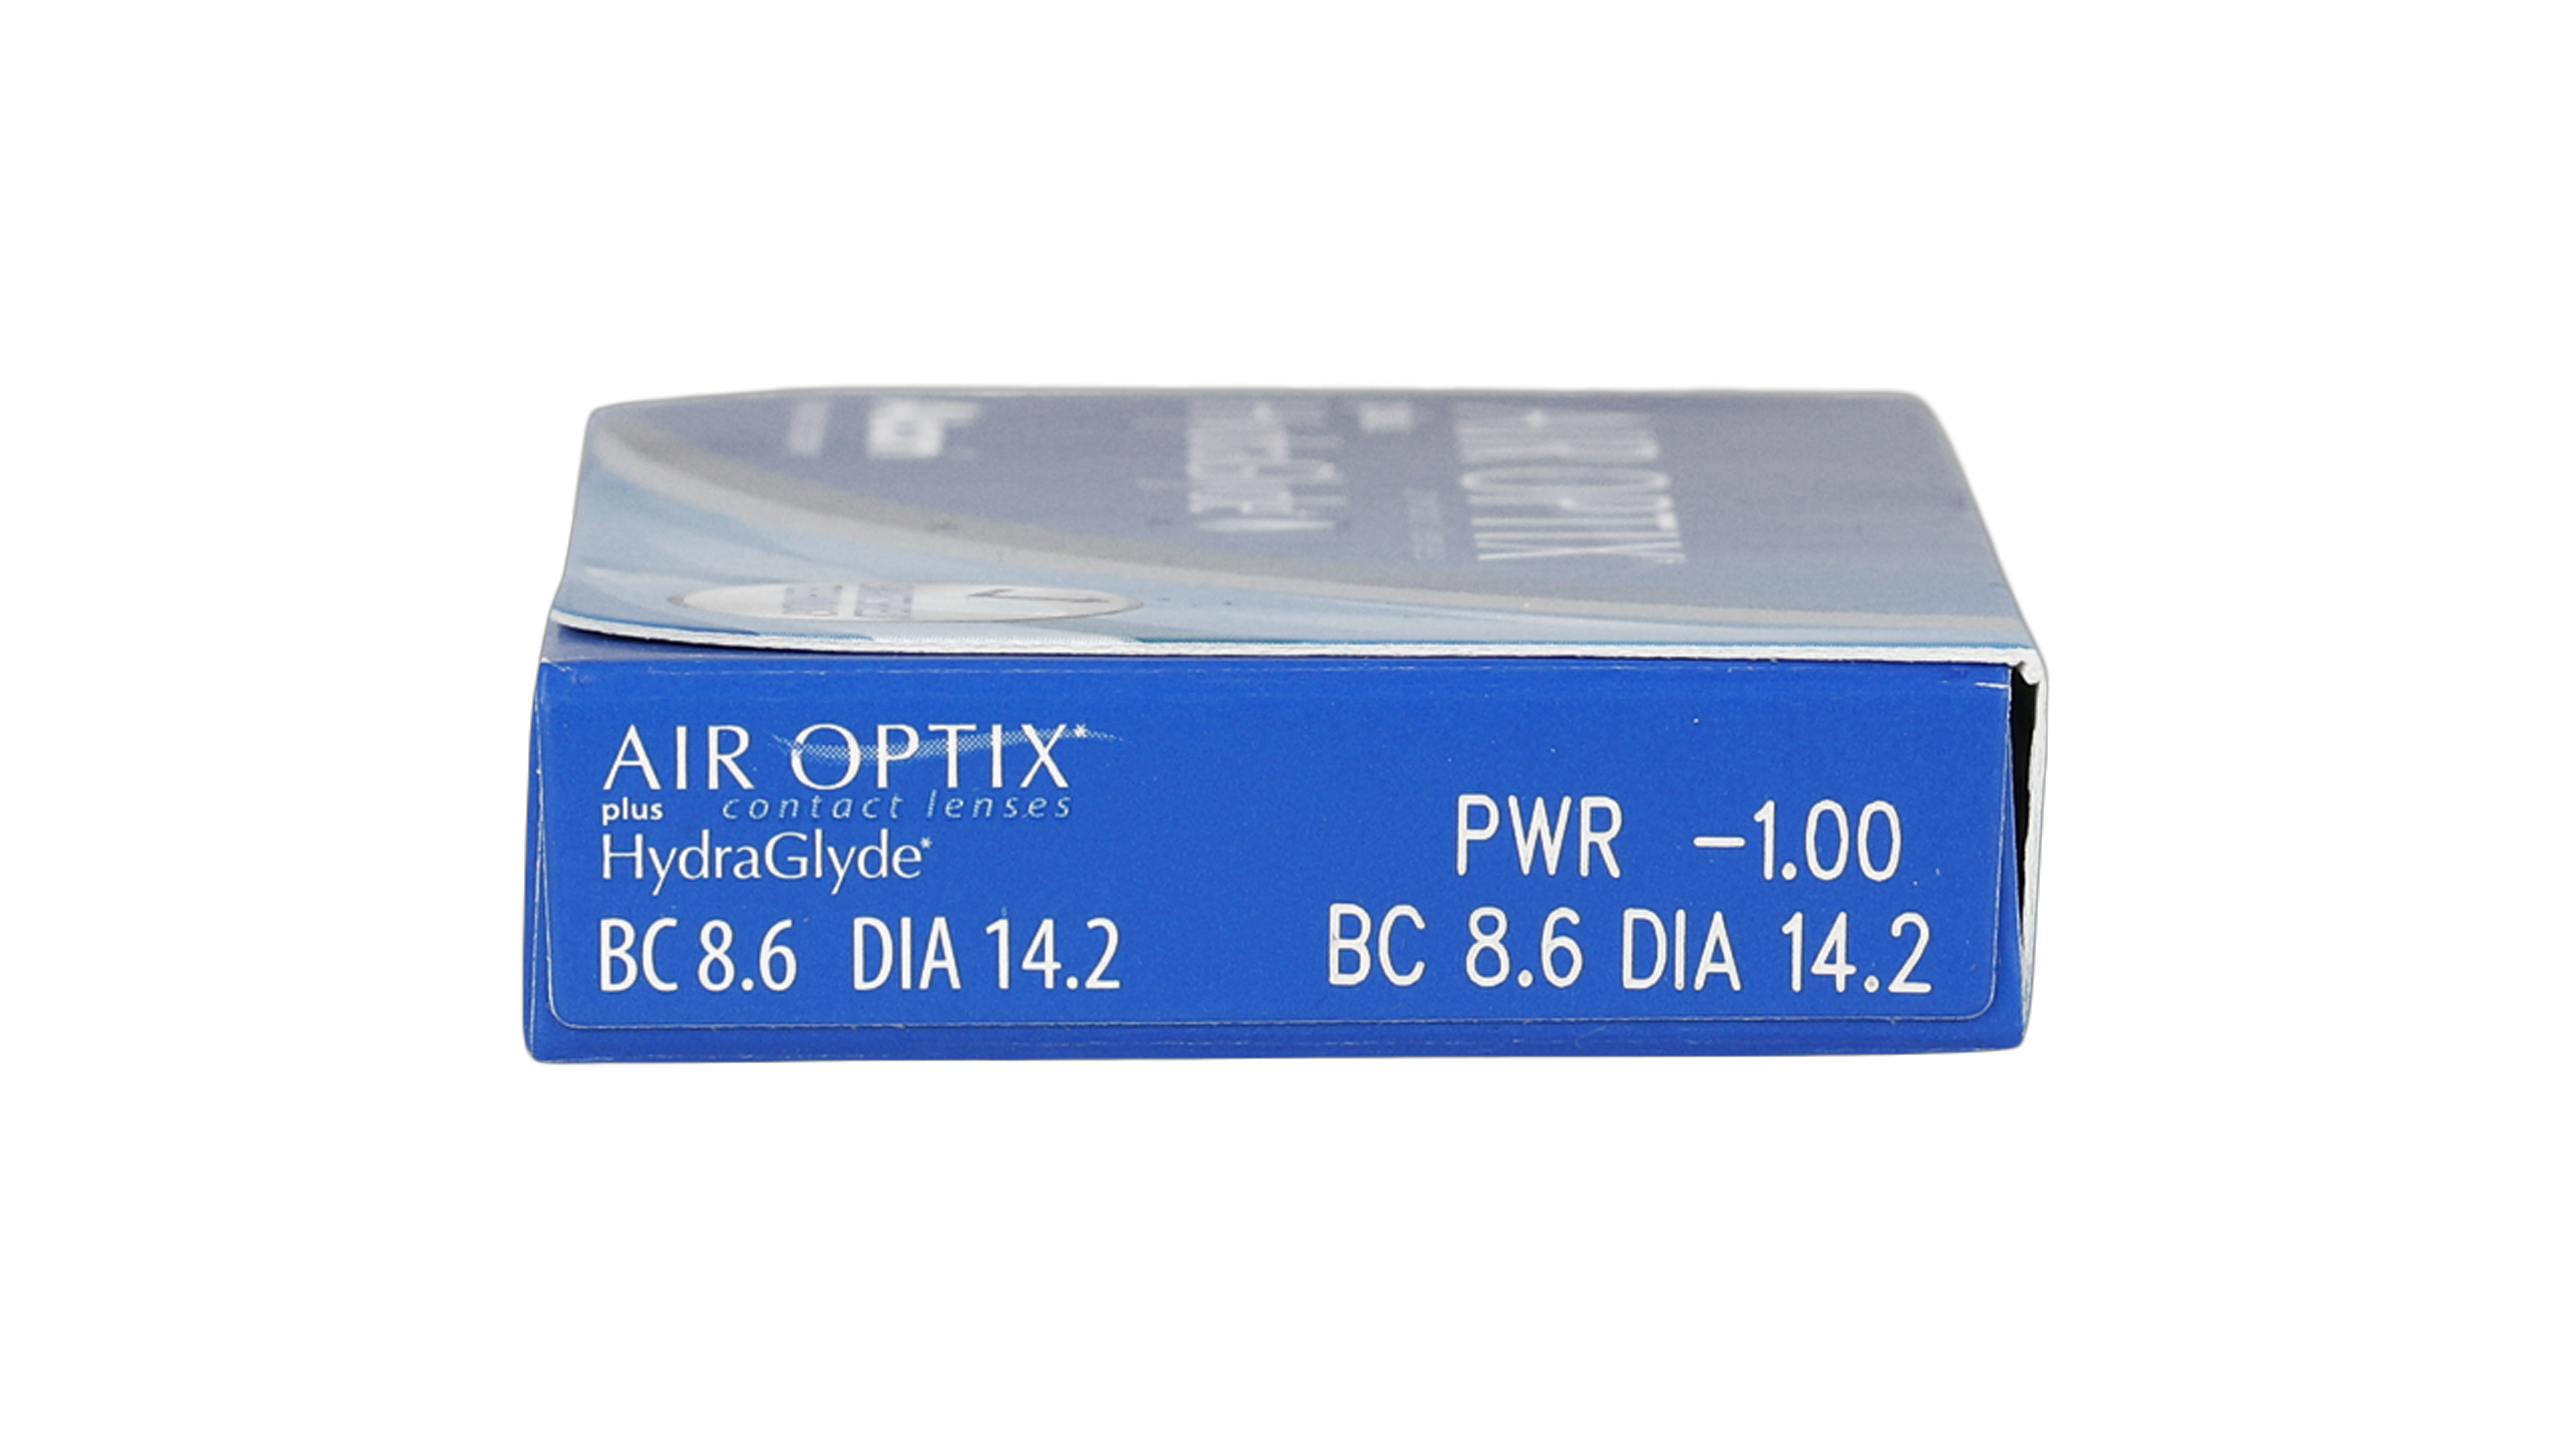 Parameter Air Optix Air Optix Hydraglyde 3 unidades Mensuales 3 lentillas por caja